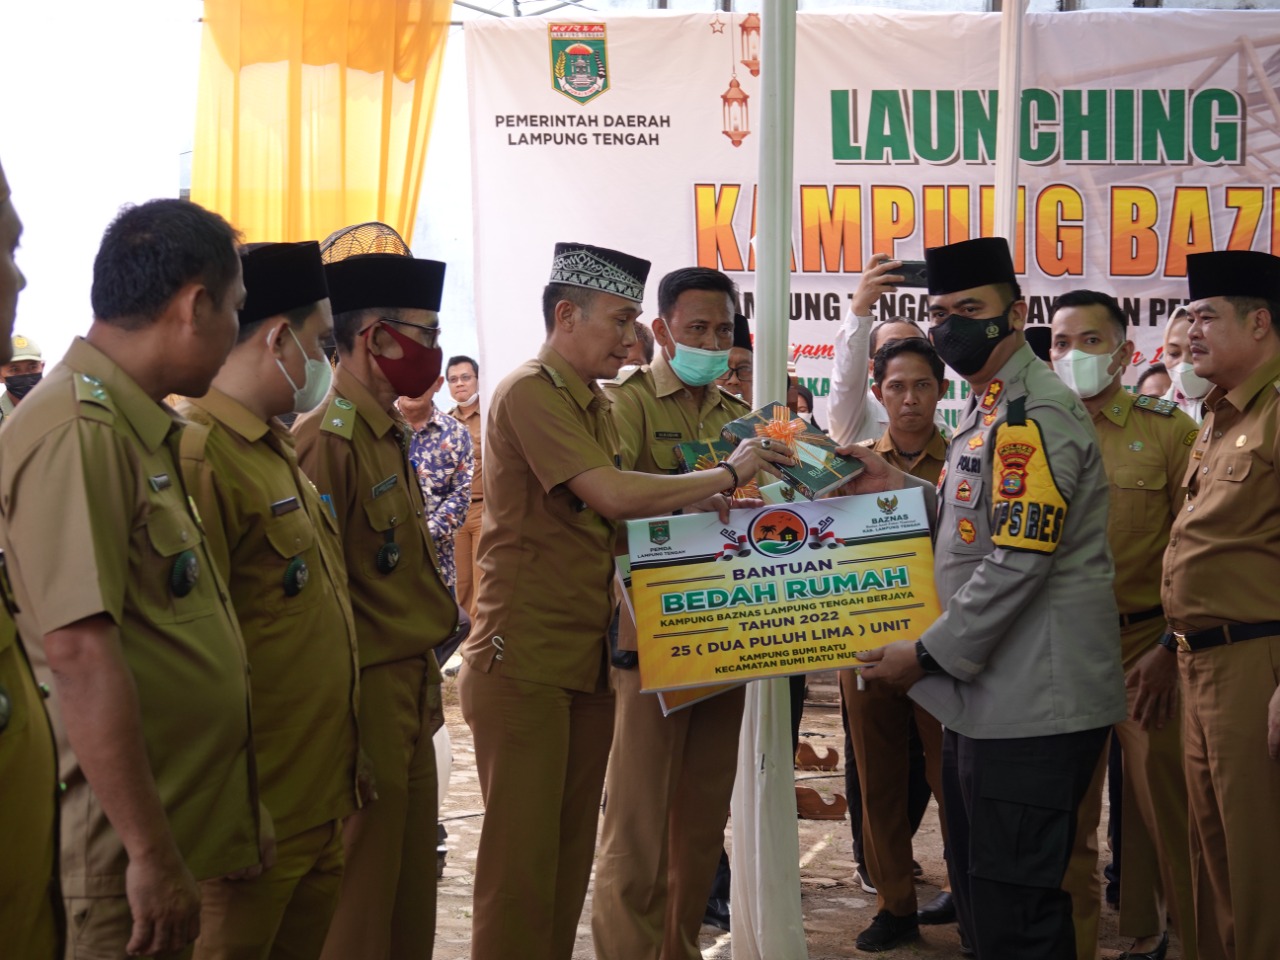 Kapolres Lampung Tengah Hadiri Launching Kampung  Baznas Di Terbanggi Besar Lampung Tengah Bersama Forkopimda